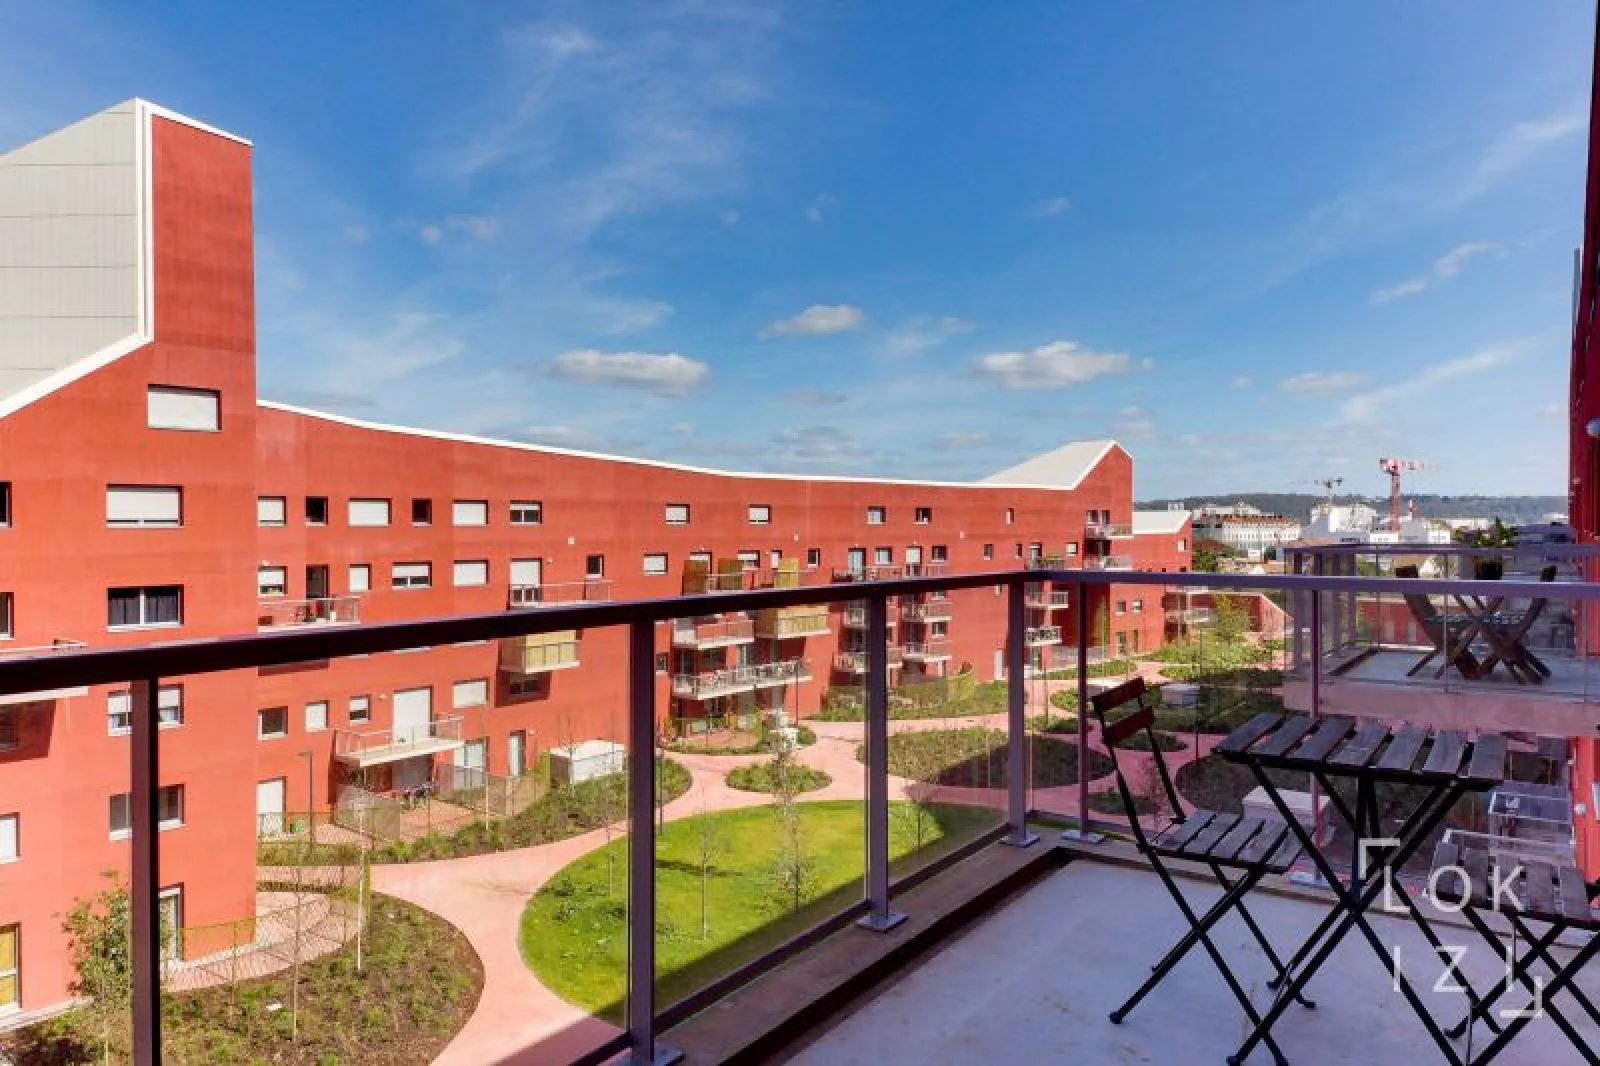 Location appartement duplex T3 meubl de 68m (Bordeaux - La Bastide)